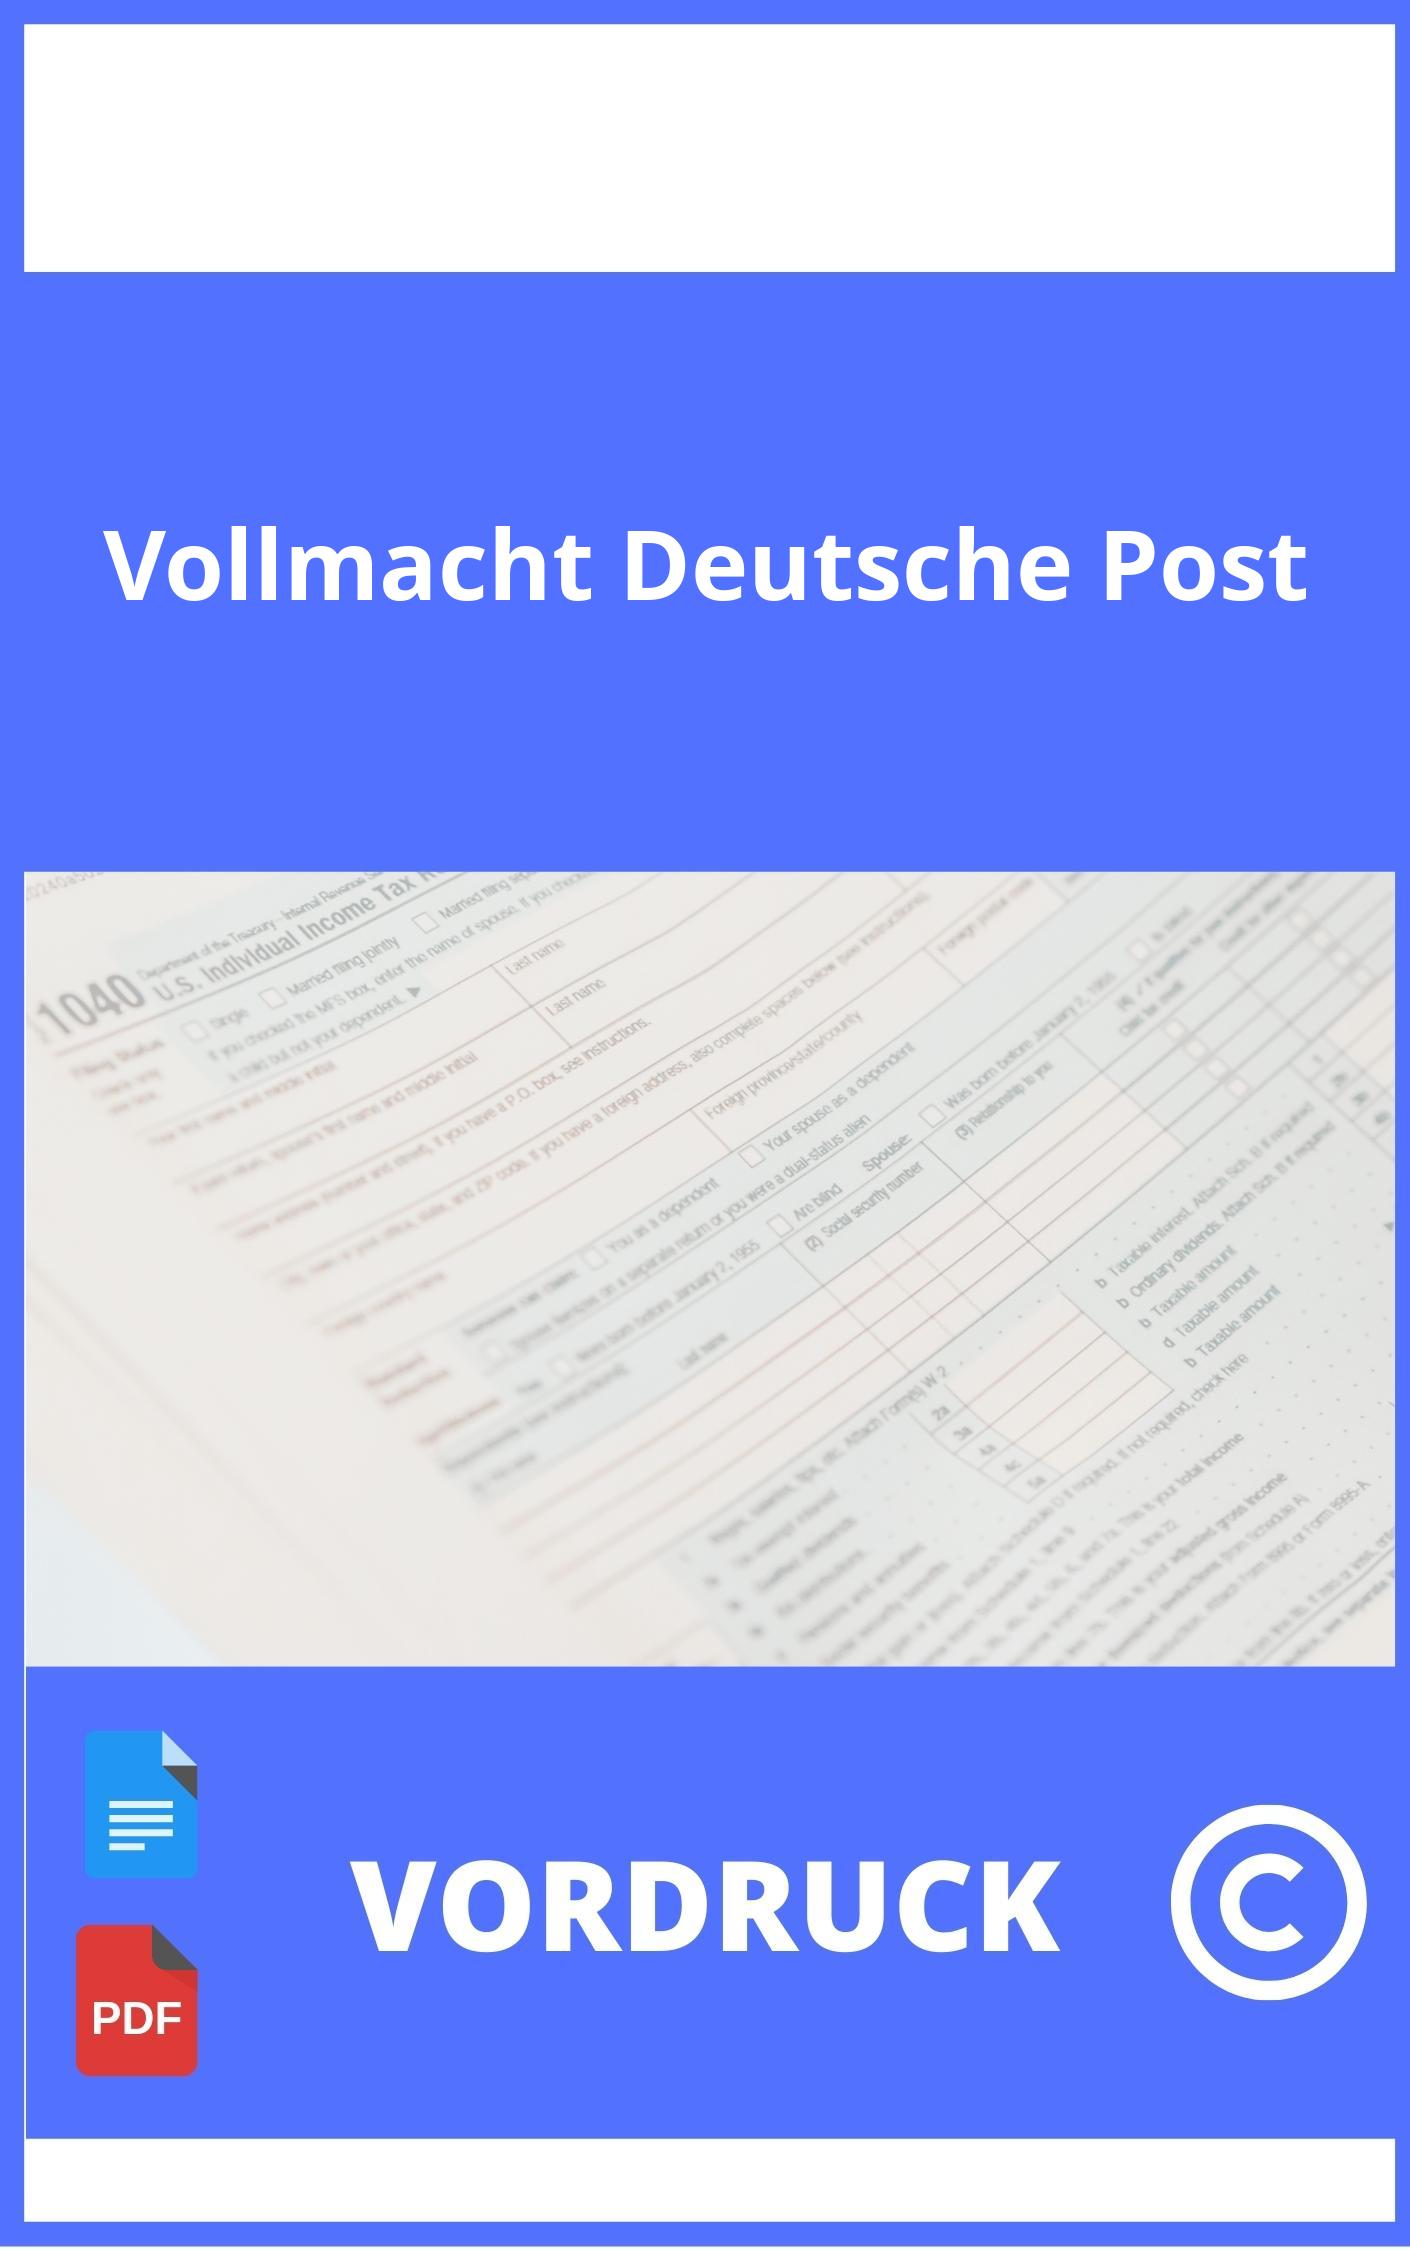 Vollmacht Deutsche Post Vordruck